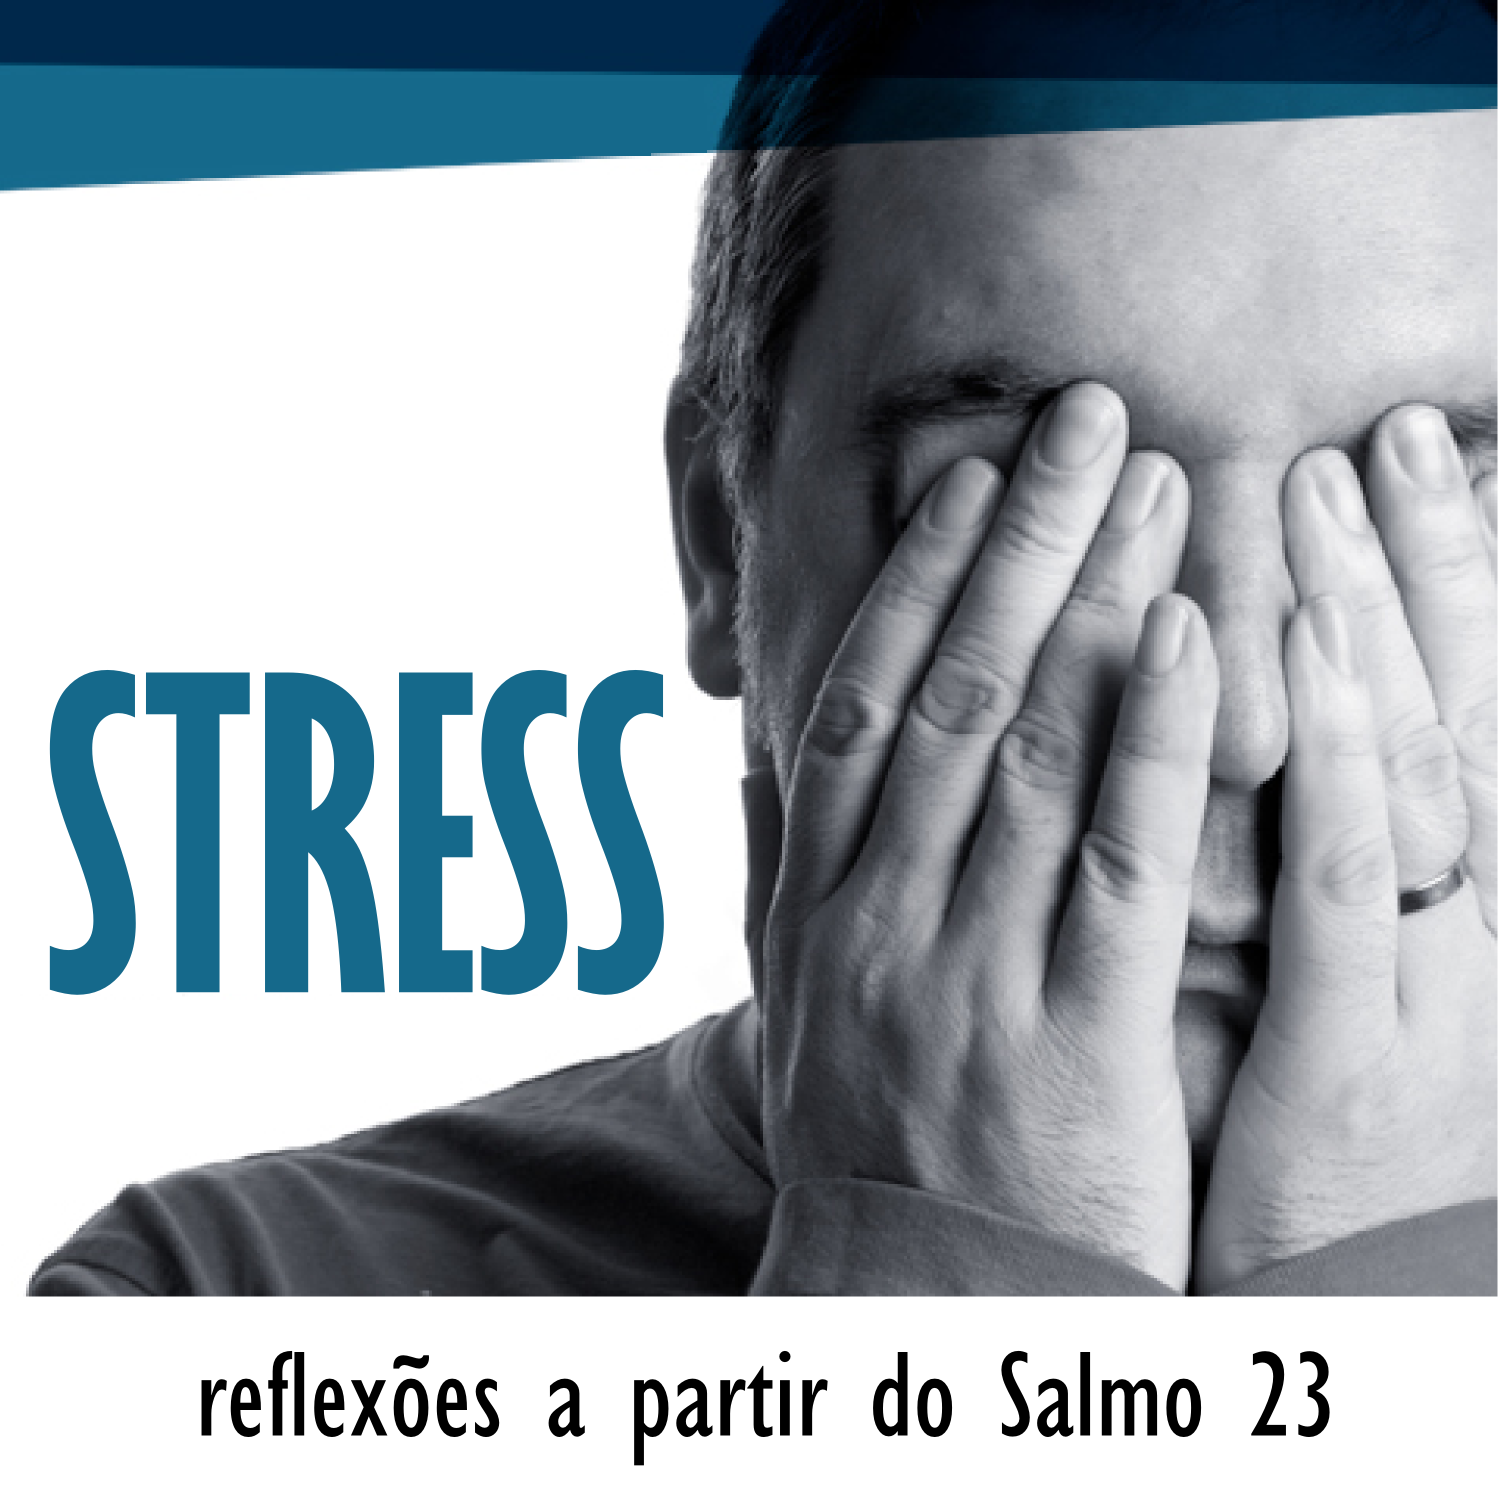 Stress - Reflexões sobre o Salmo 23